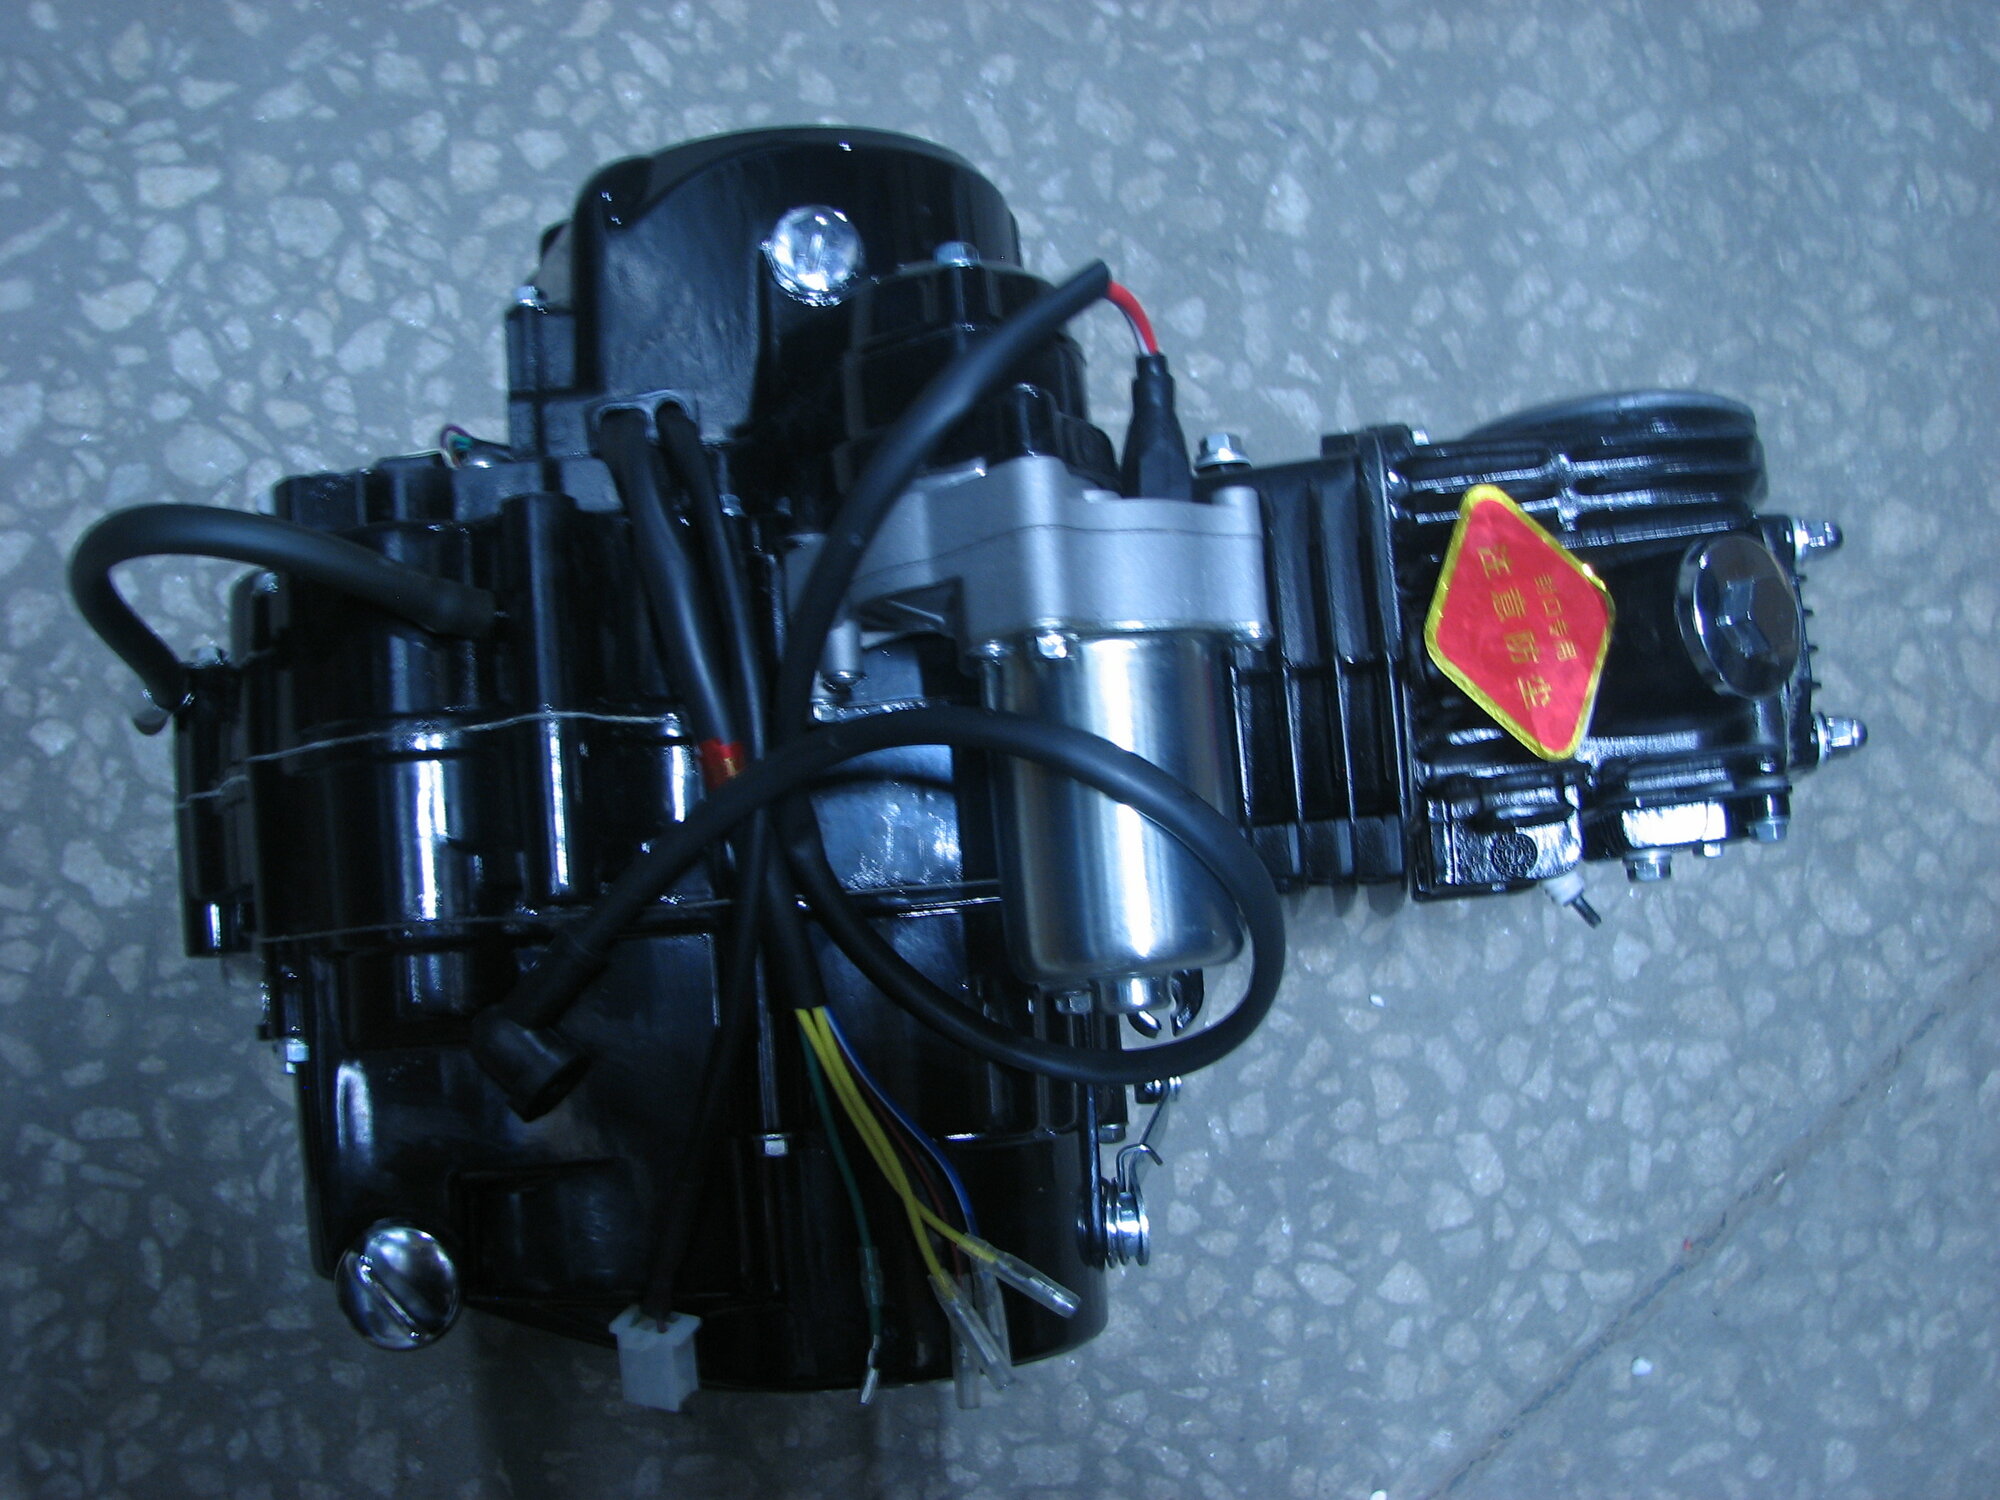 Двигатель 4т. 125 см3 (С120 1P52) альфа горизонтальный тюнинг круговая педаль двойная